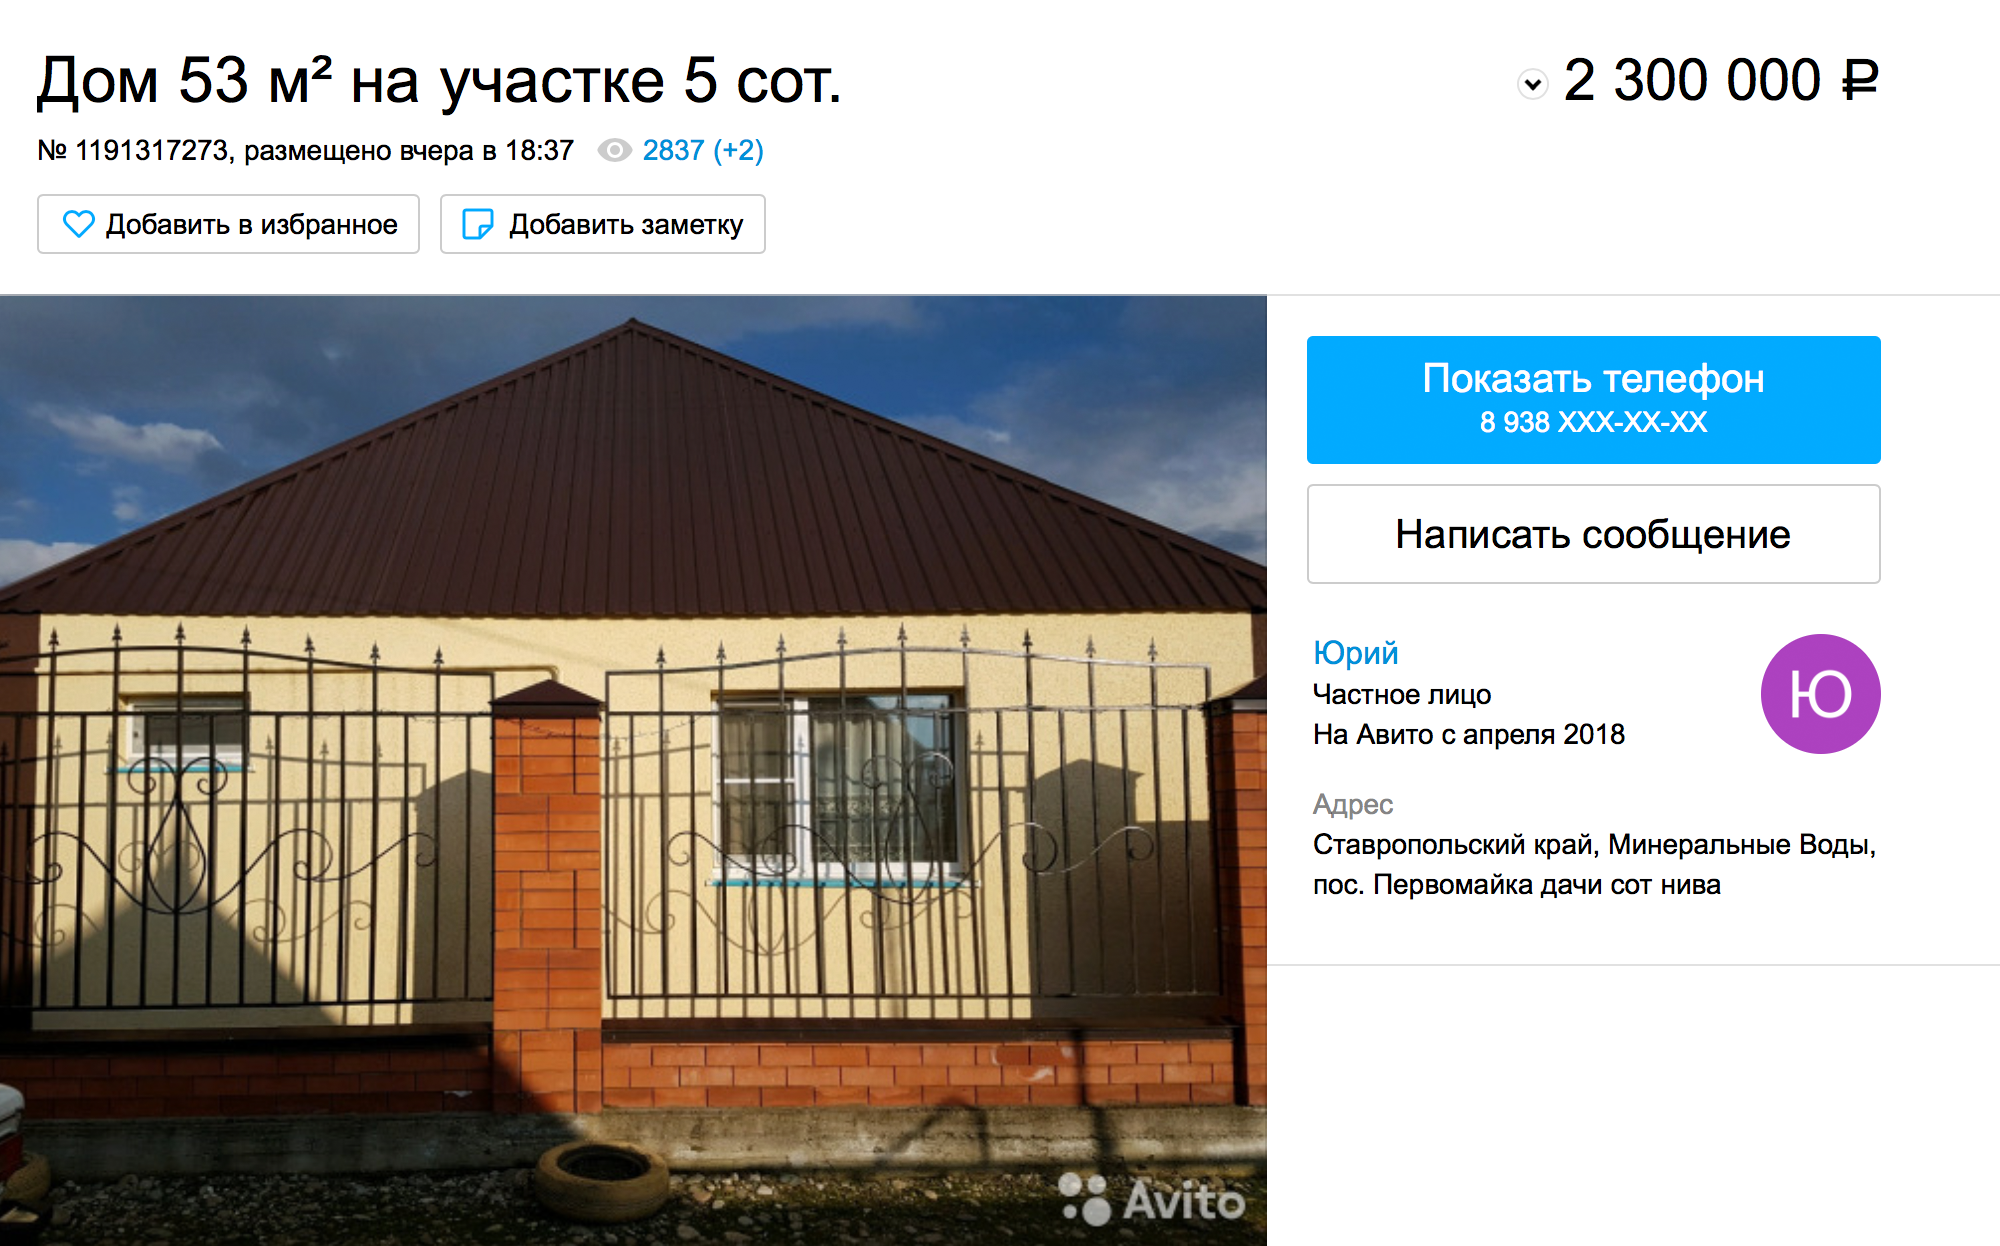 Небольшой дом можно купить за 2,3 млн рублей